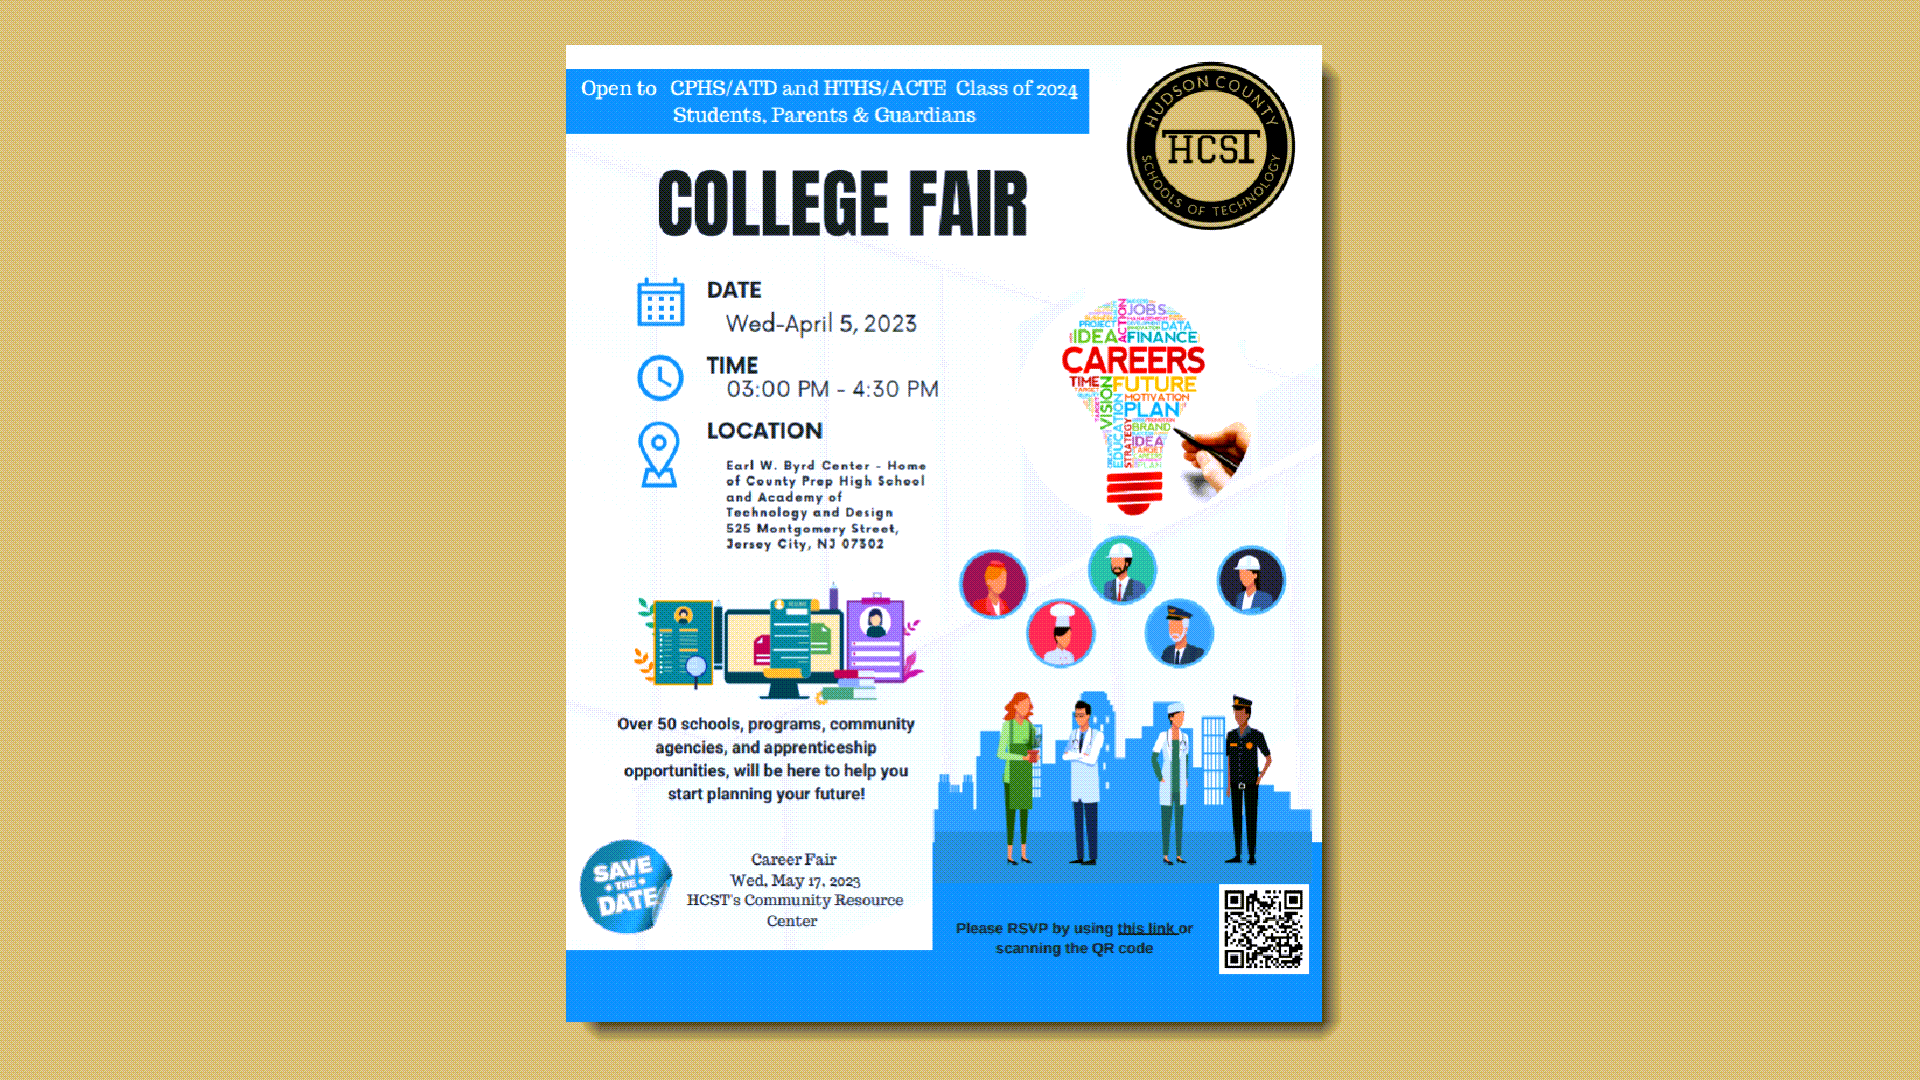 College Fair April 5, 2023